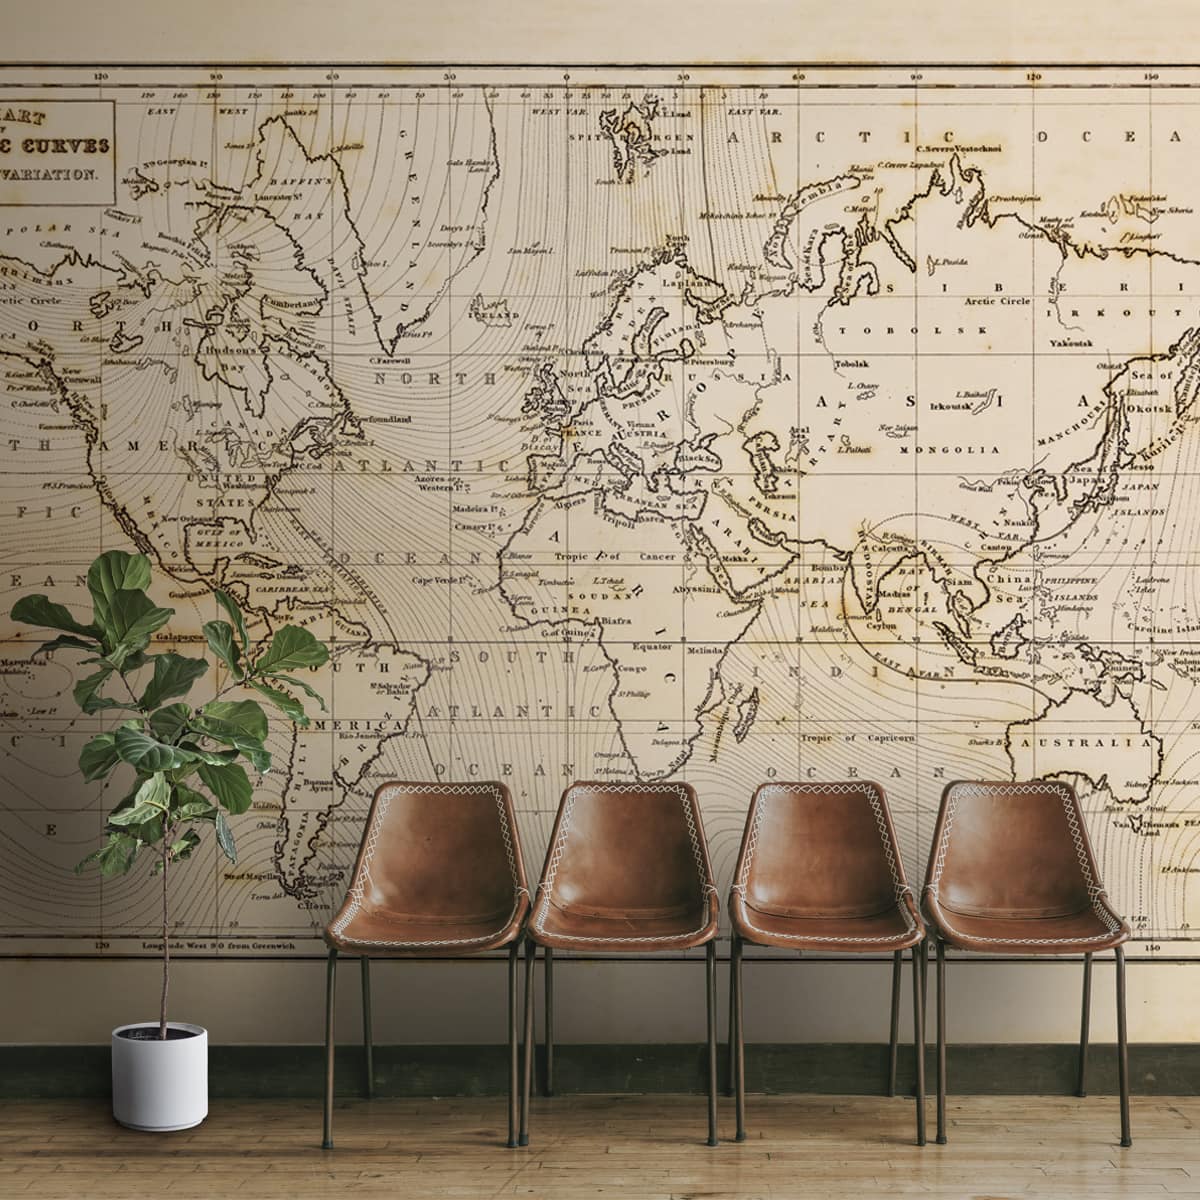 Beige Vintage Antique World Map for Walls, Customised